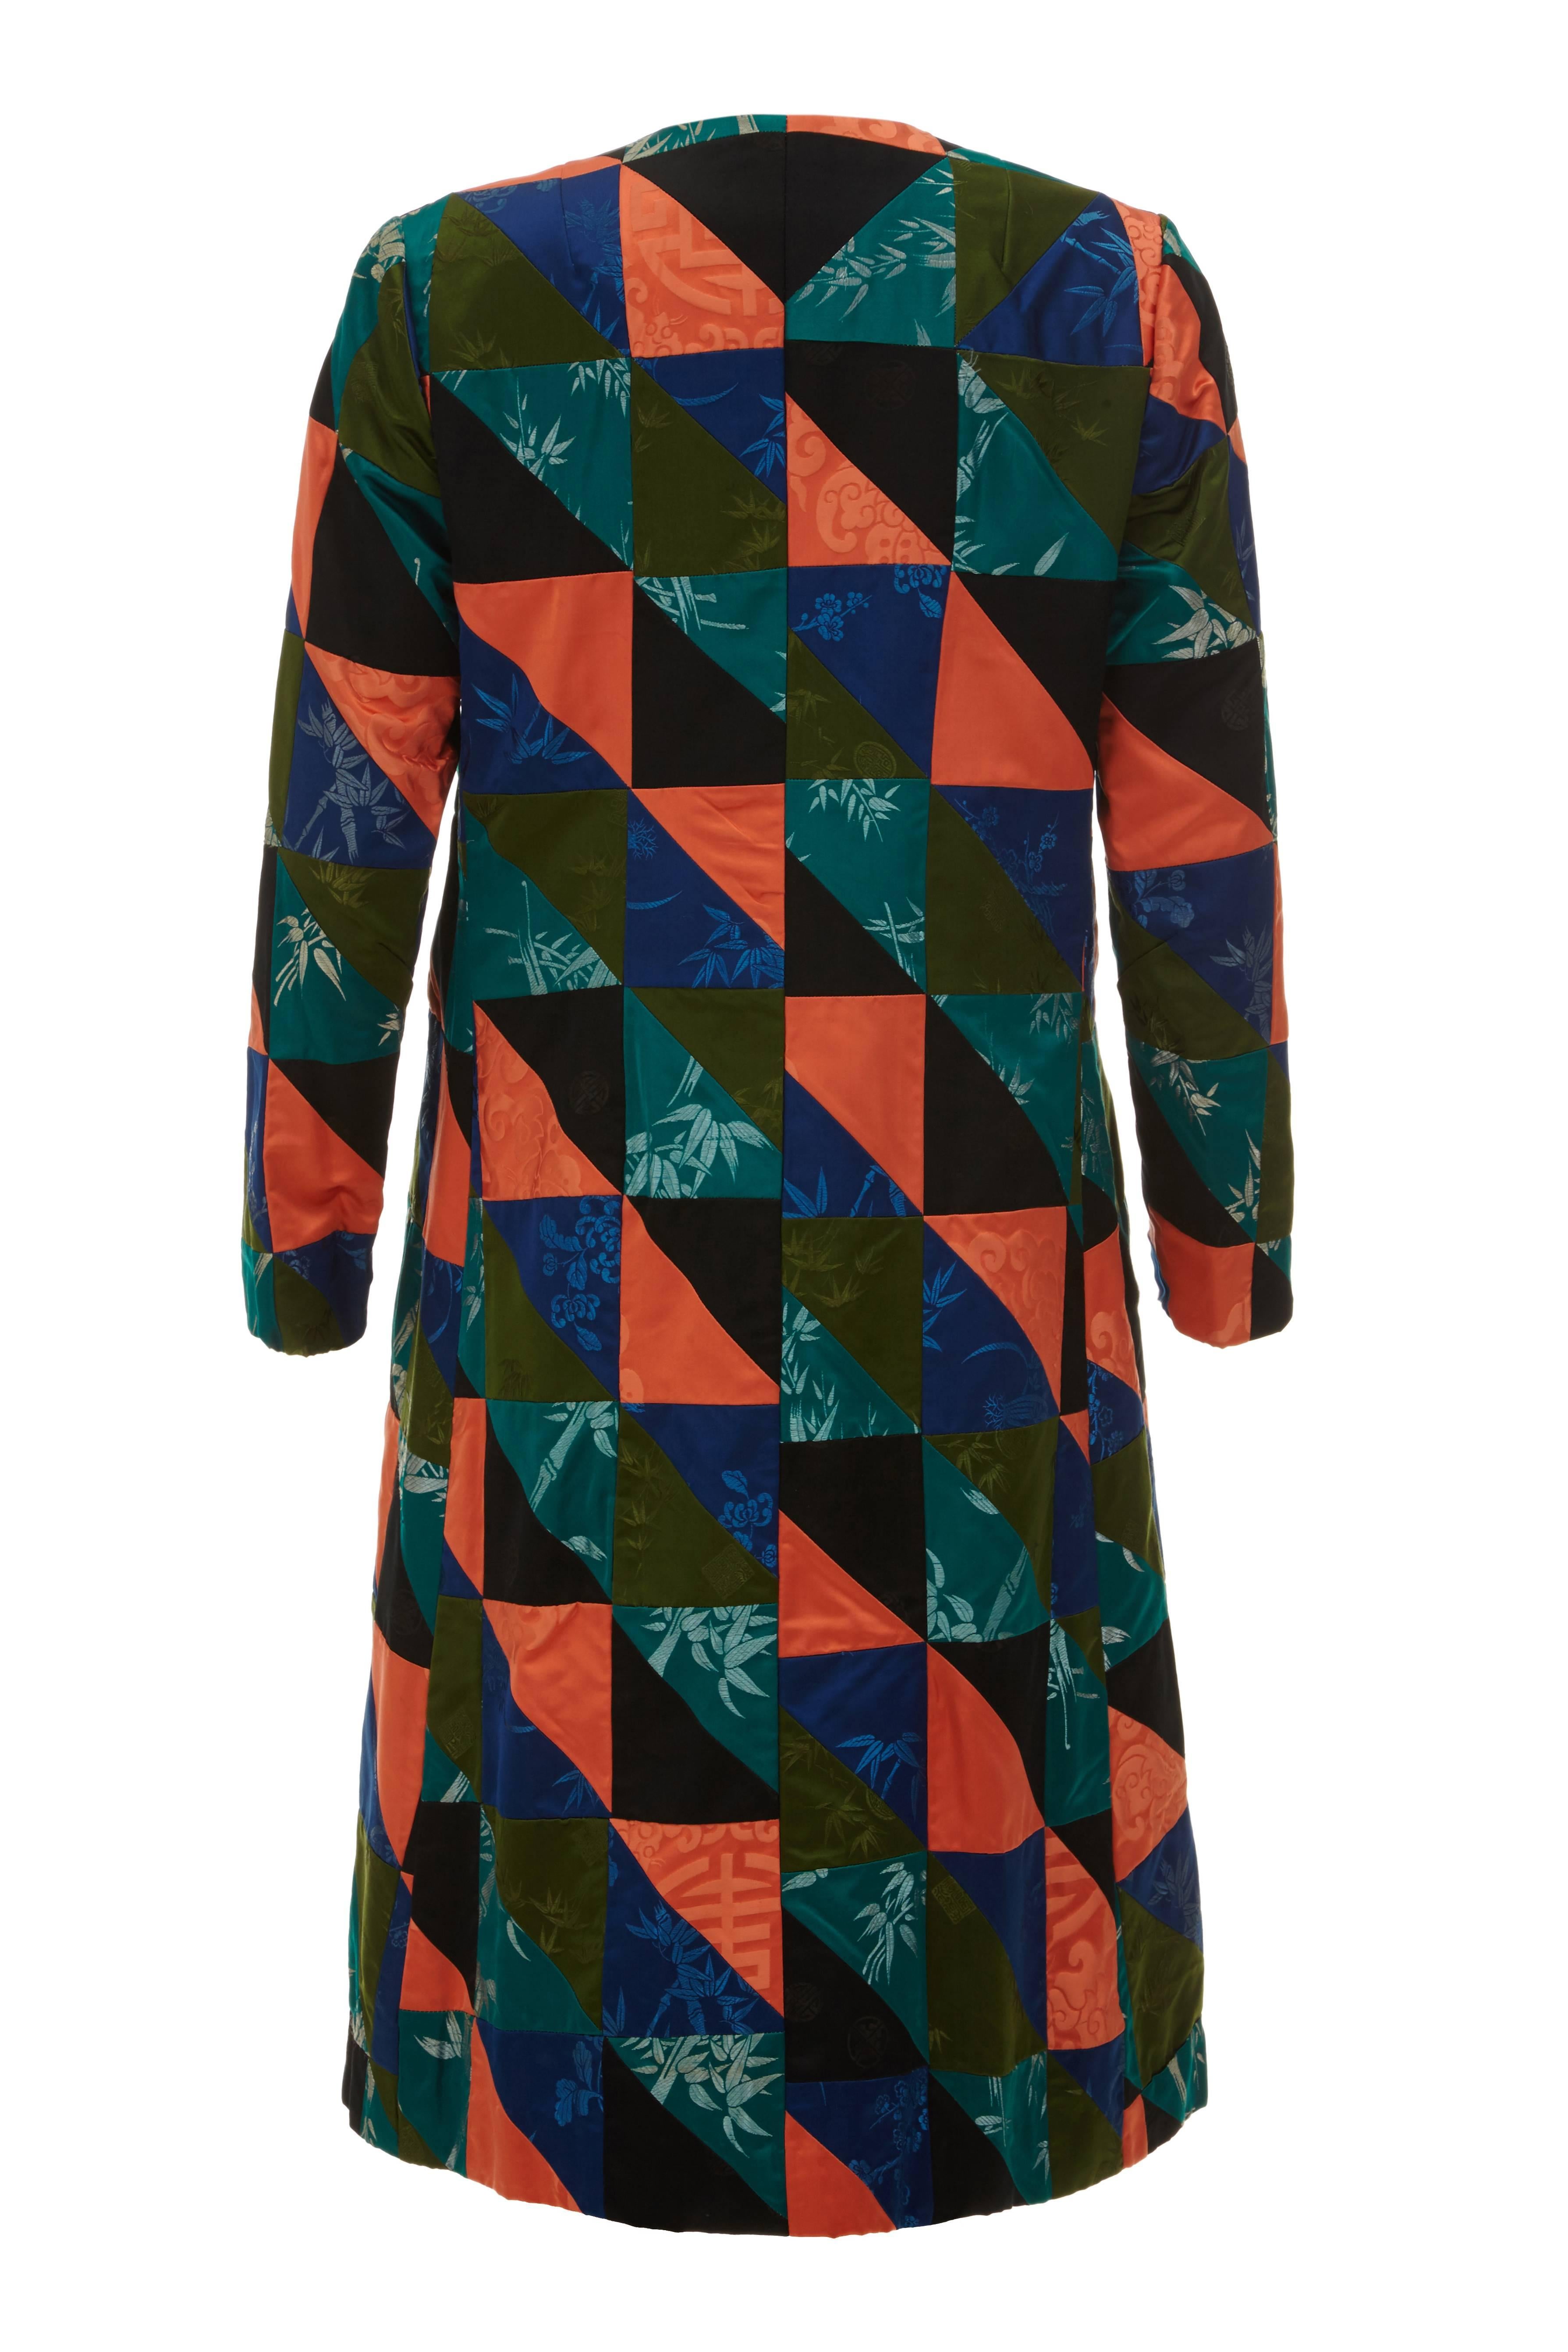 Atemberaubend und original 1960er Jahre A-Linie Patchwork chinesischen Seide Mantel. Dieser Mantel ist sehr ungewöhnlich und besteht vollständig aus einem Rapportmuster aus importierten chinesischen Seidenstoffen in Schwarz, Grün, Blau und Orange. 